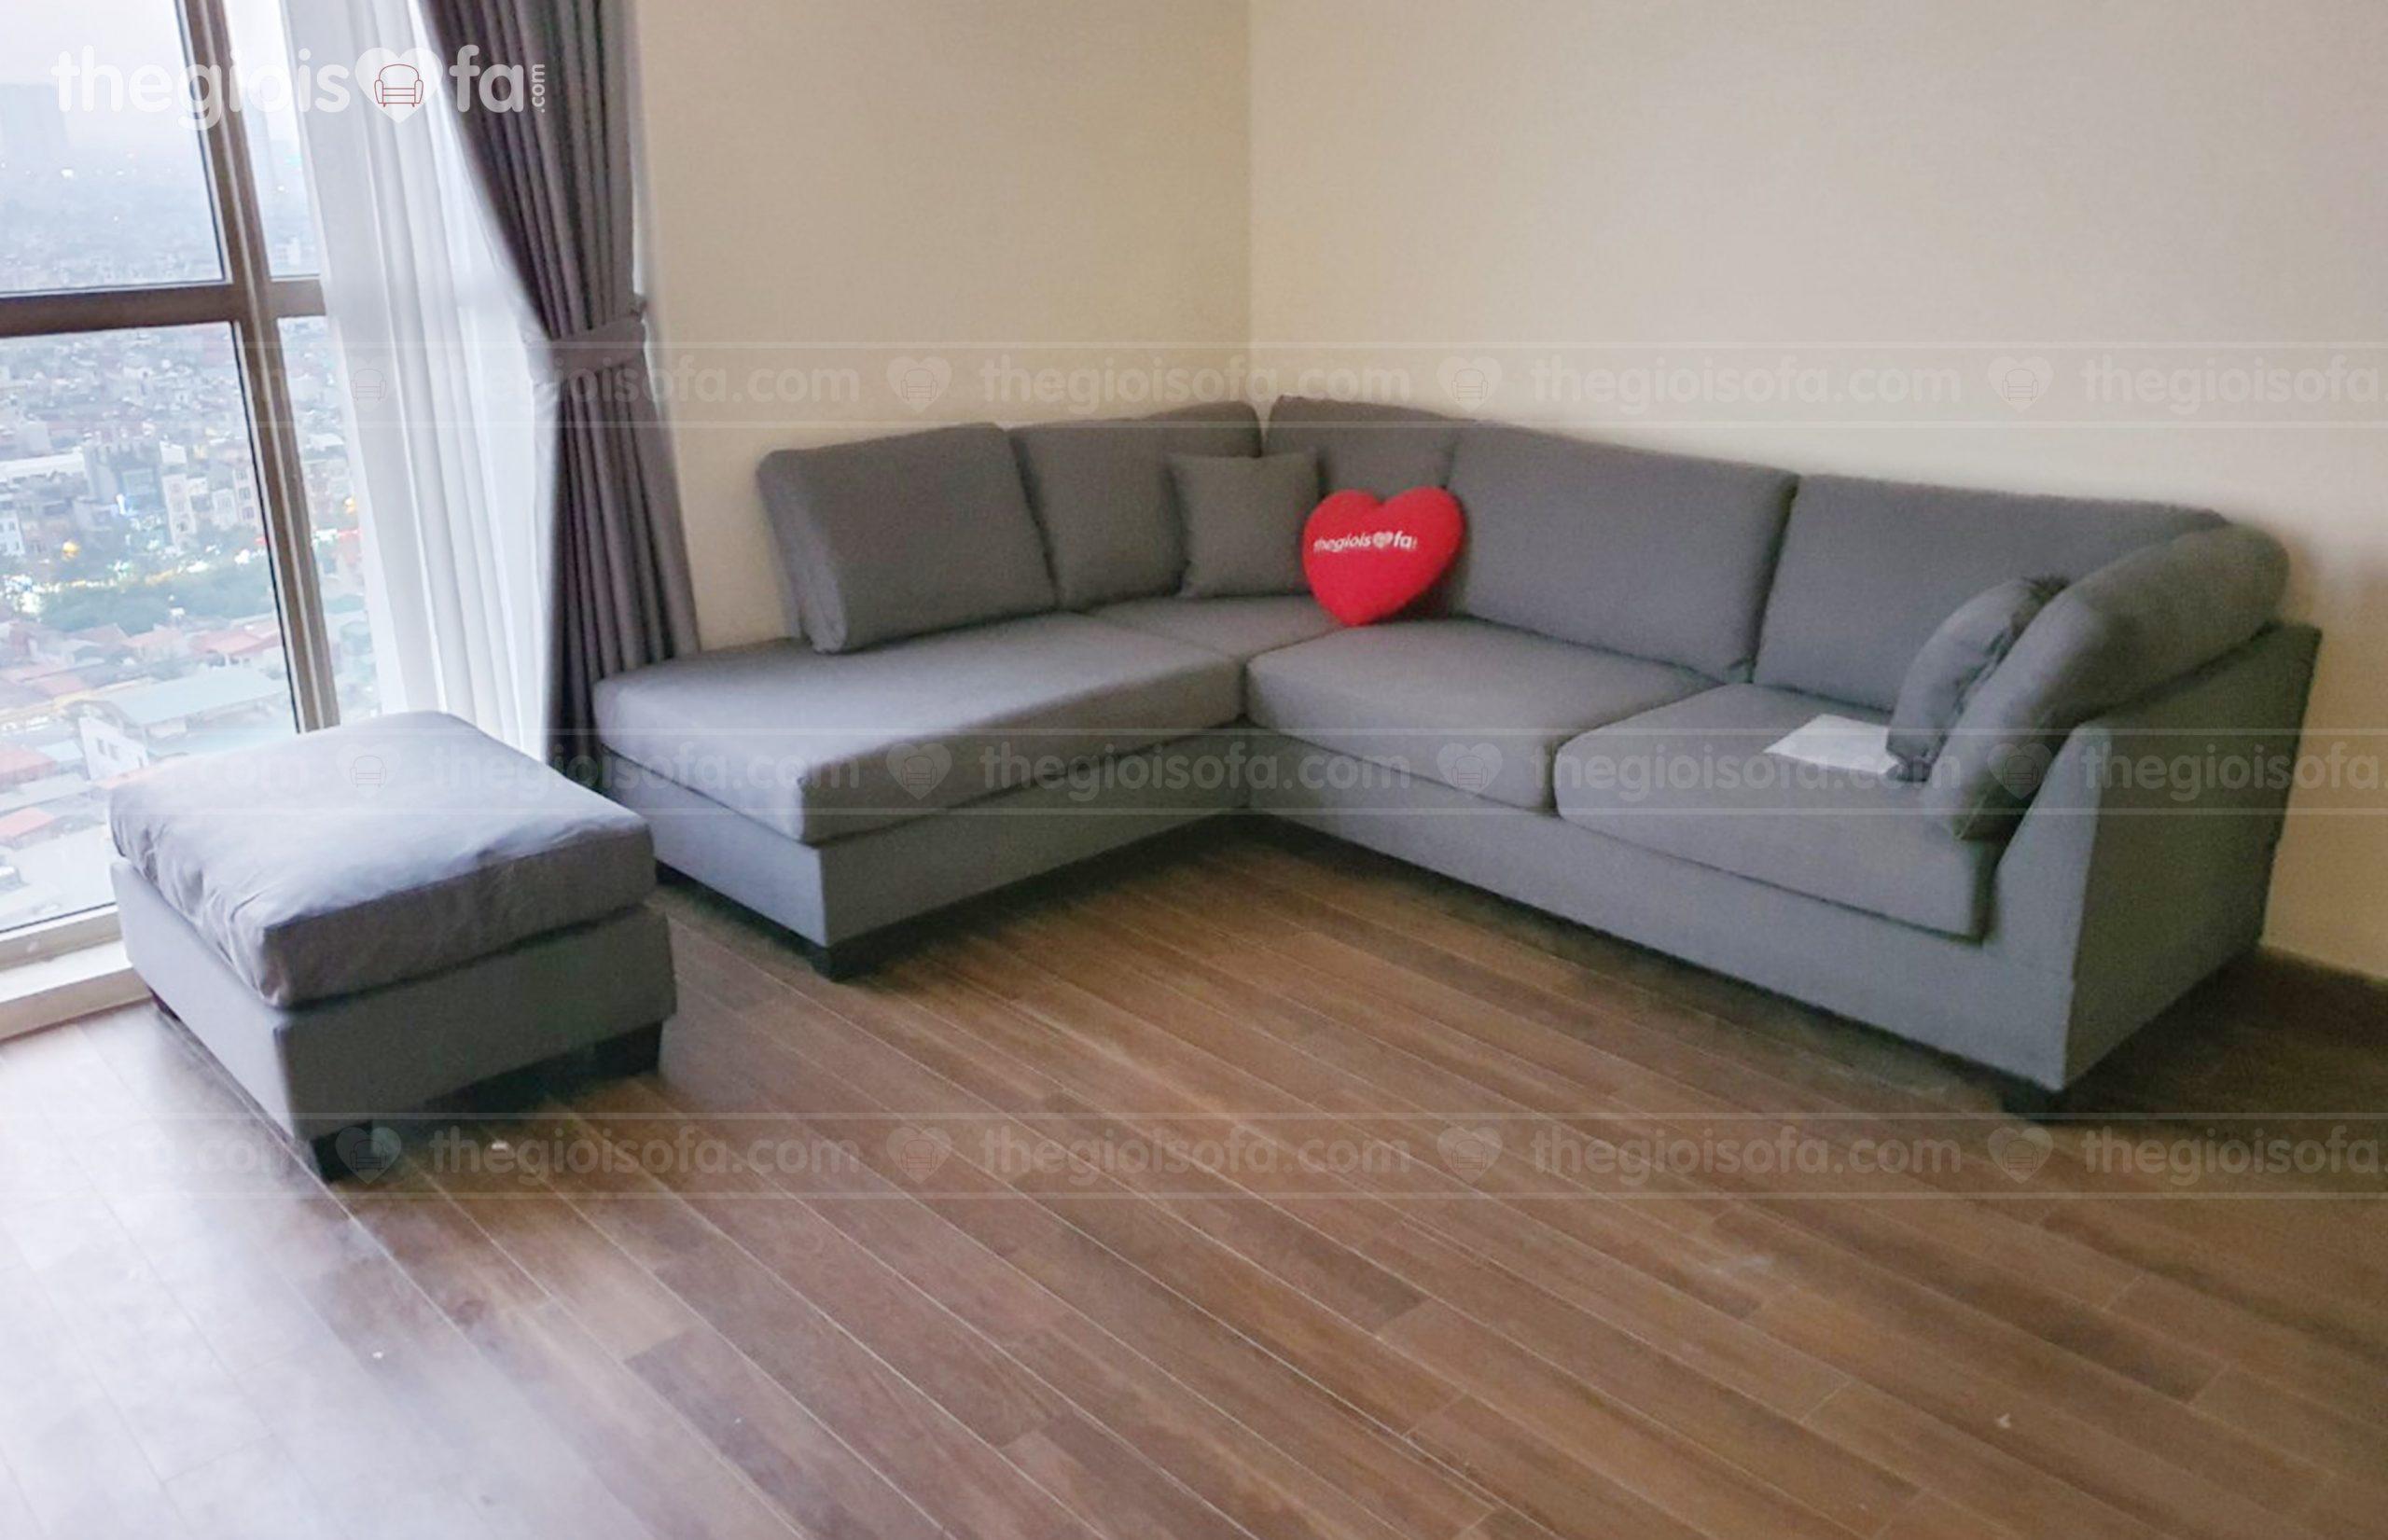 Giao hàng sofa góc vải cao cấp Sofaland Jasmin cho anh Hùng tại 70 Nguyễn Đức Cảnh – Mua sofa tại Quận Hoàng Mai